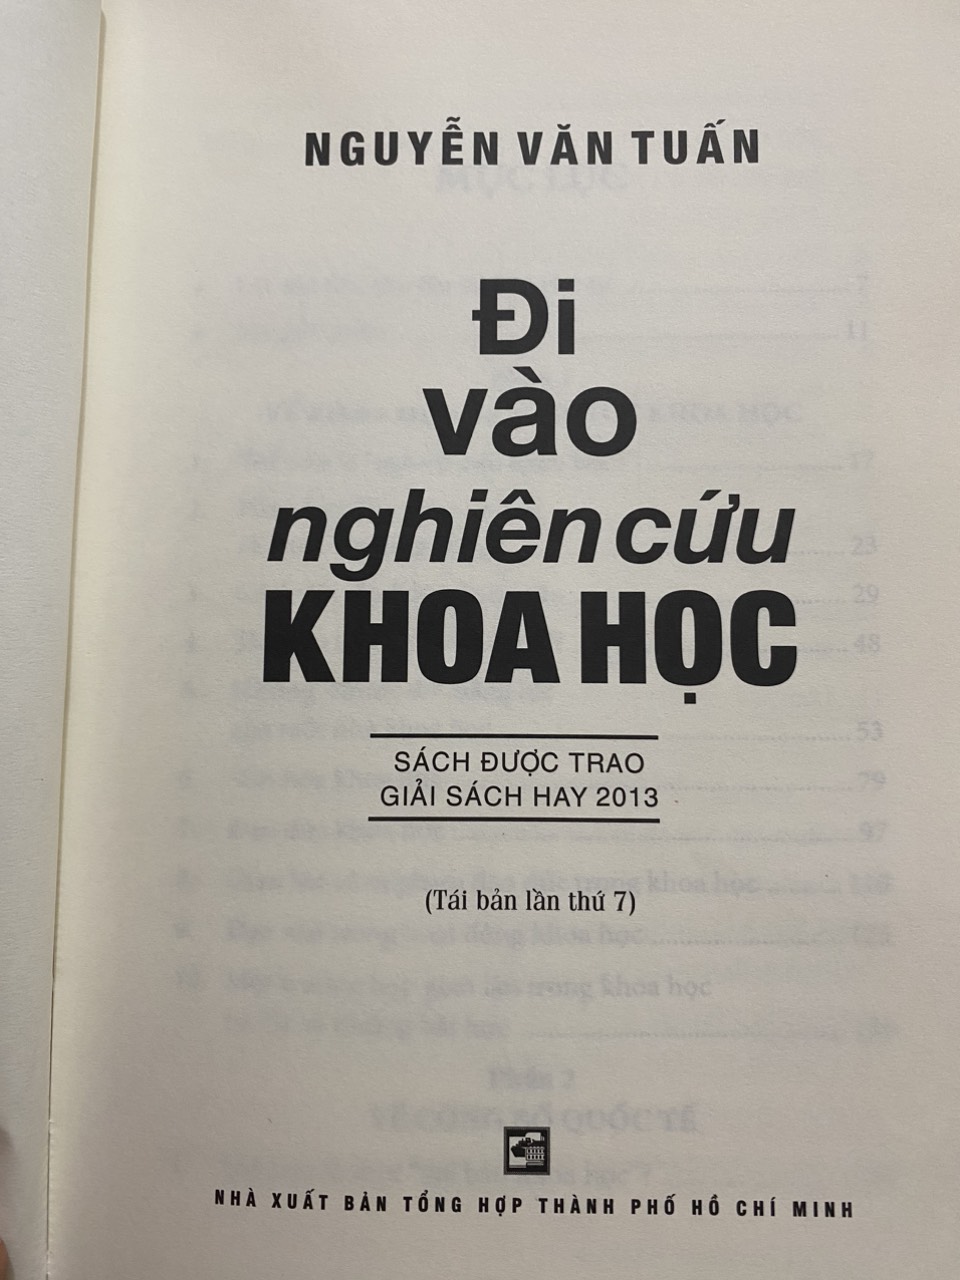 Đi Vào Nghiên Cứu Khoa Học - Nguyễn Văn Tuấn - Tái bản lần 7 (Sách được trao giải Sách hay 2013)